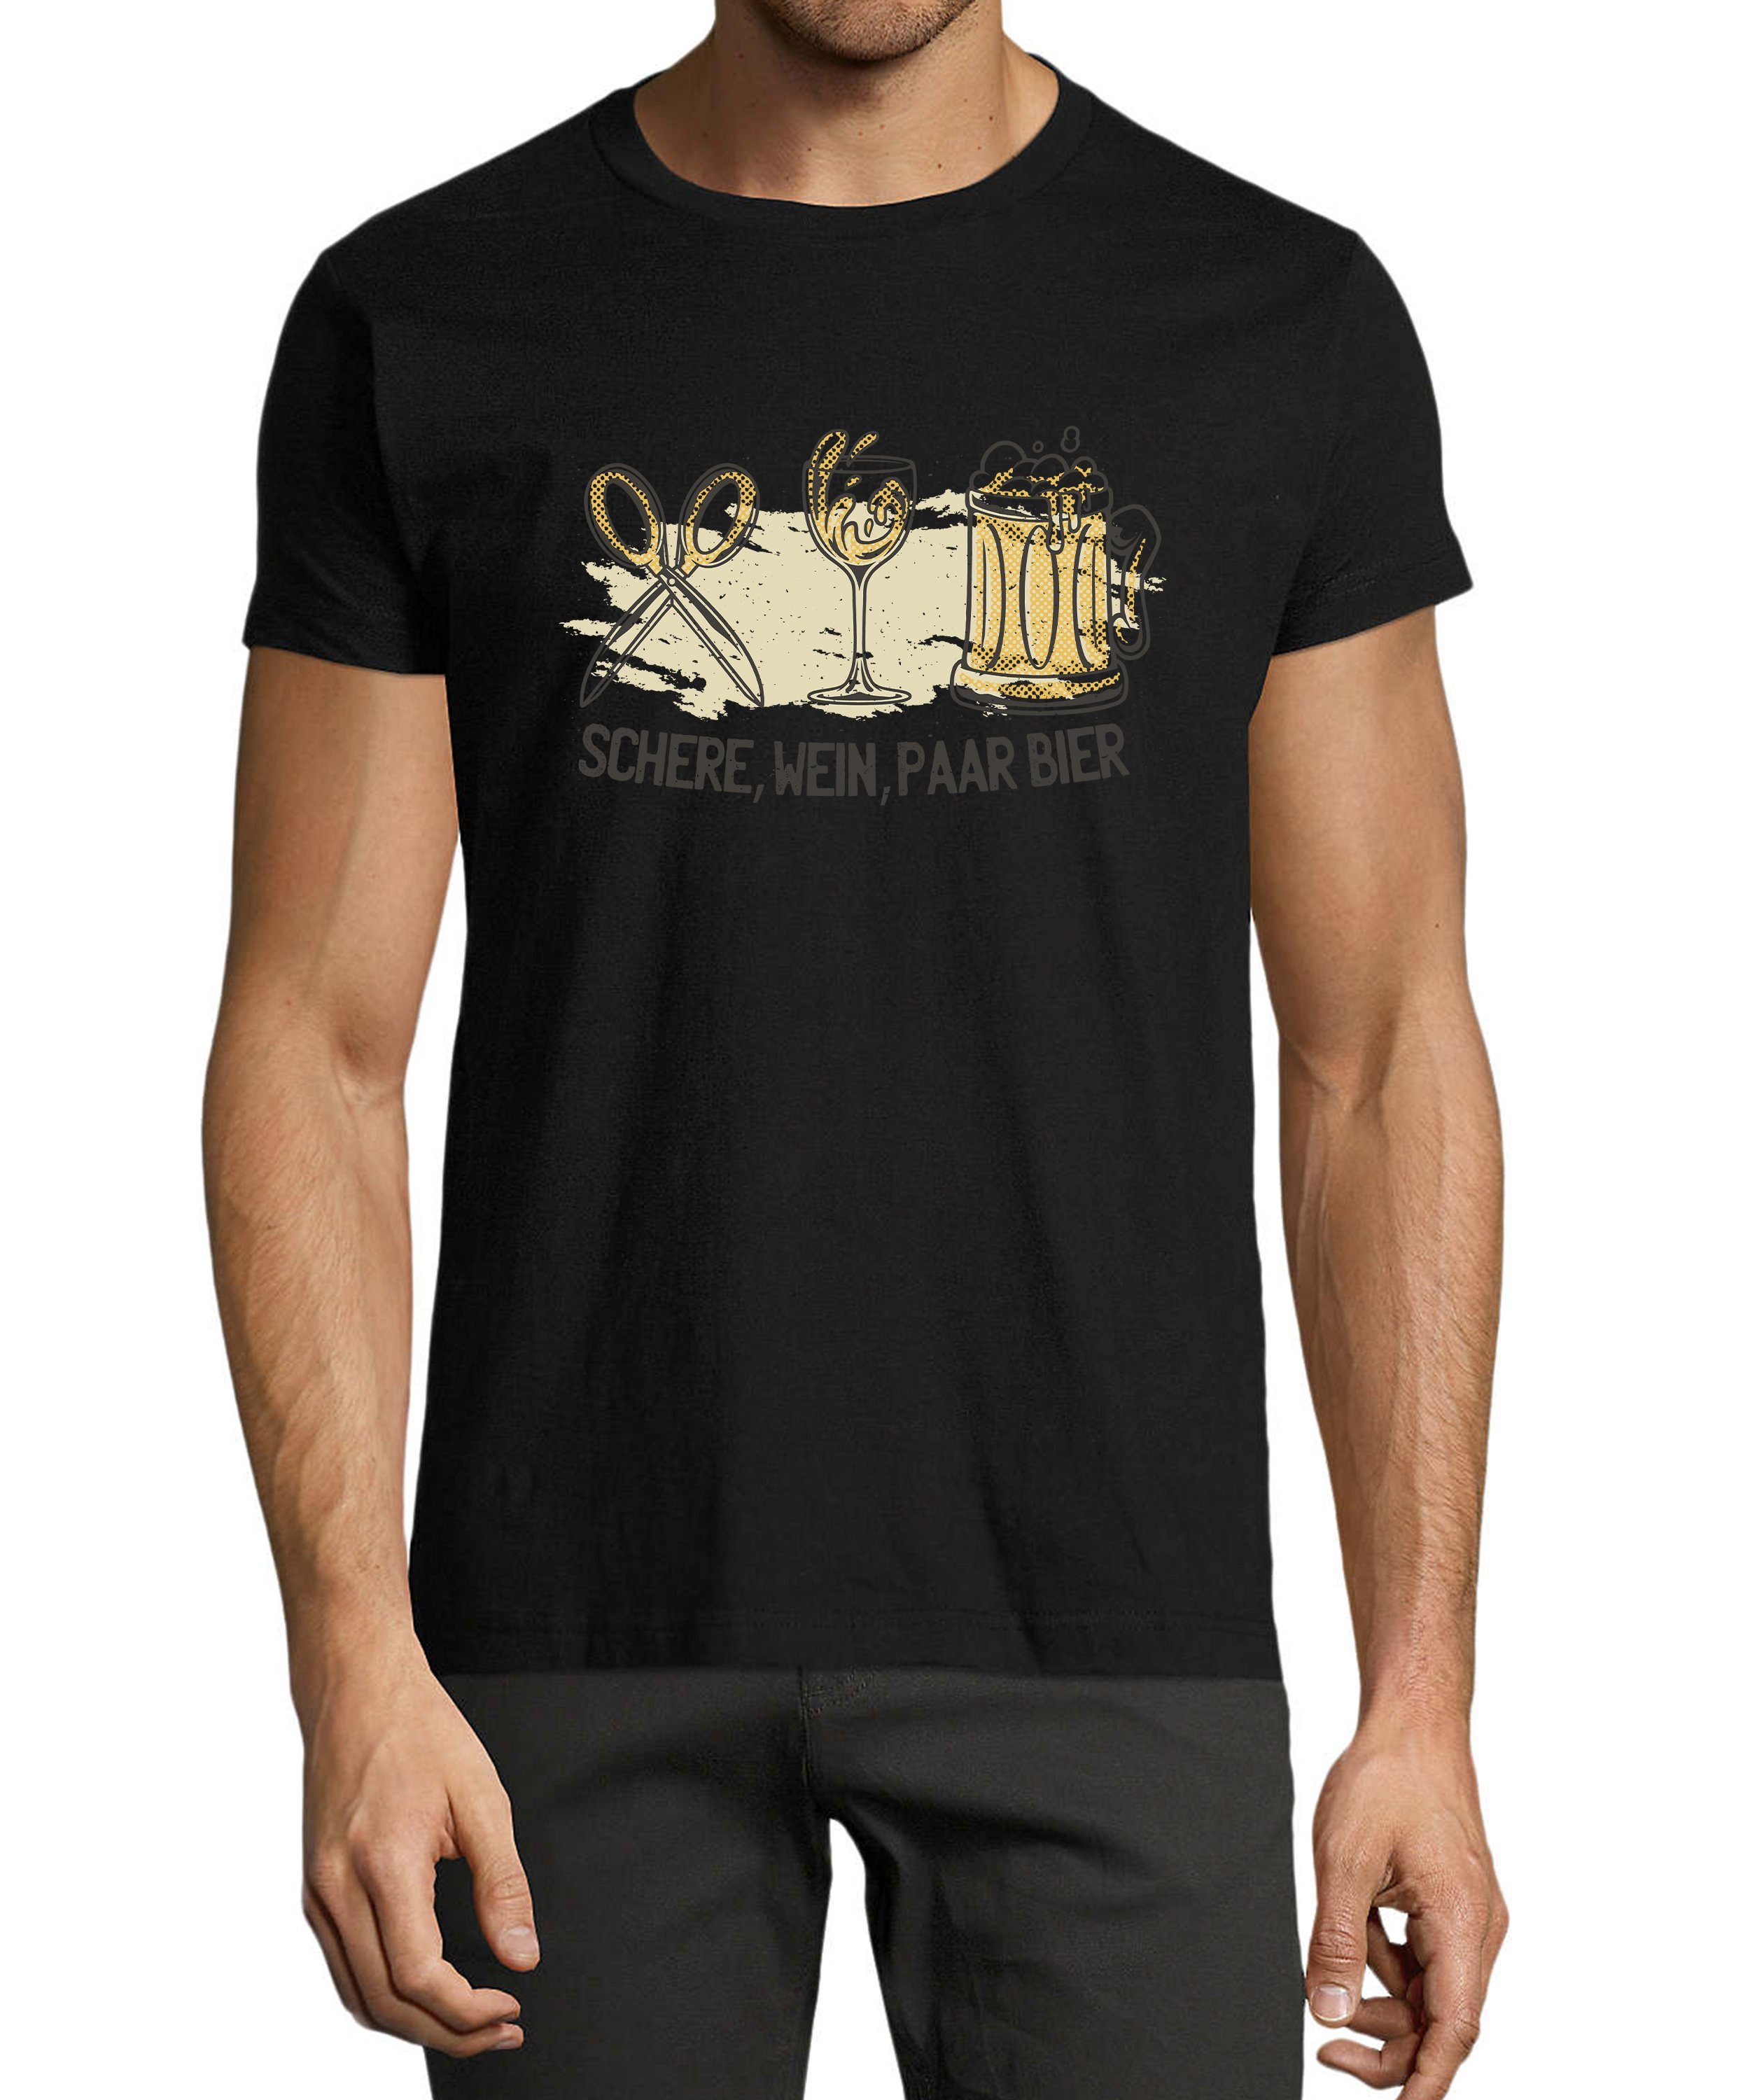 MyDesign24 T-Shirt Herren Sprüche Shirt - Trinkshirt Schere, Wein, Paar Bier Baumwollshirt mit Aufdruck Regular Fit, i321 schwarz | Trachtenshirts